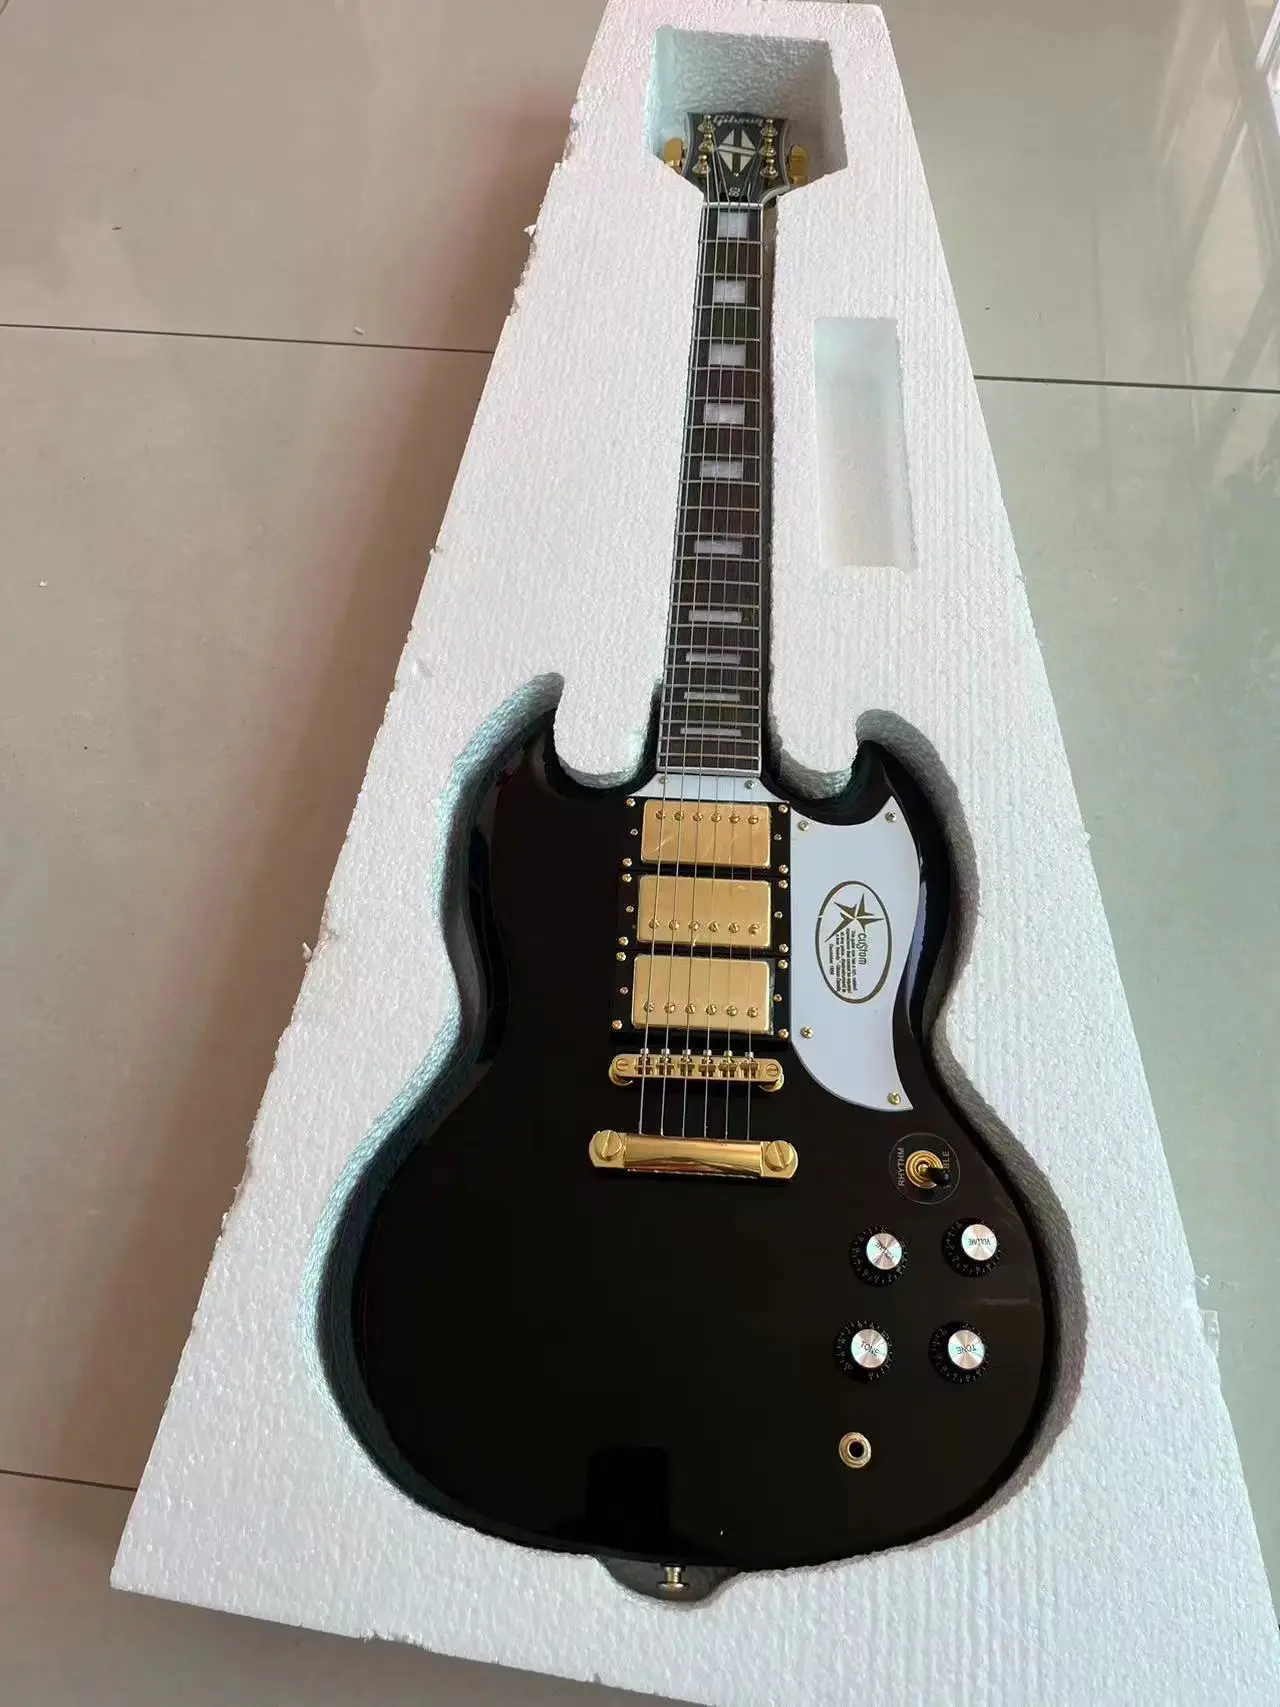 

Кремовая SG электрическая гитара Золотая фурнитура белая Защитная Глянцевая отделка хороший тембр, бесплатная доставка XDES